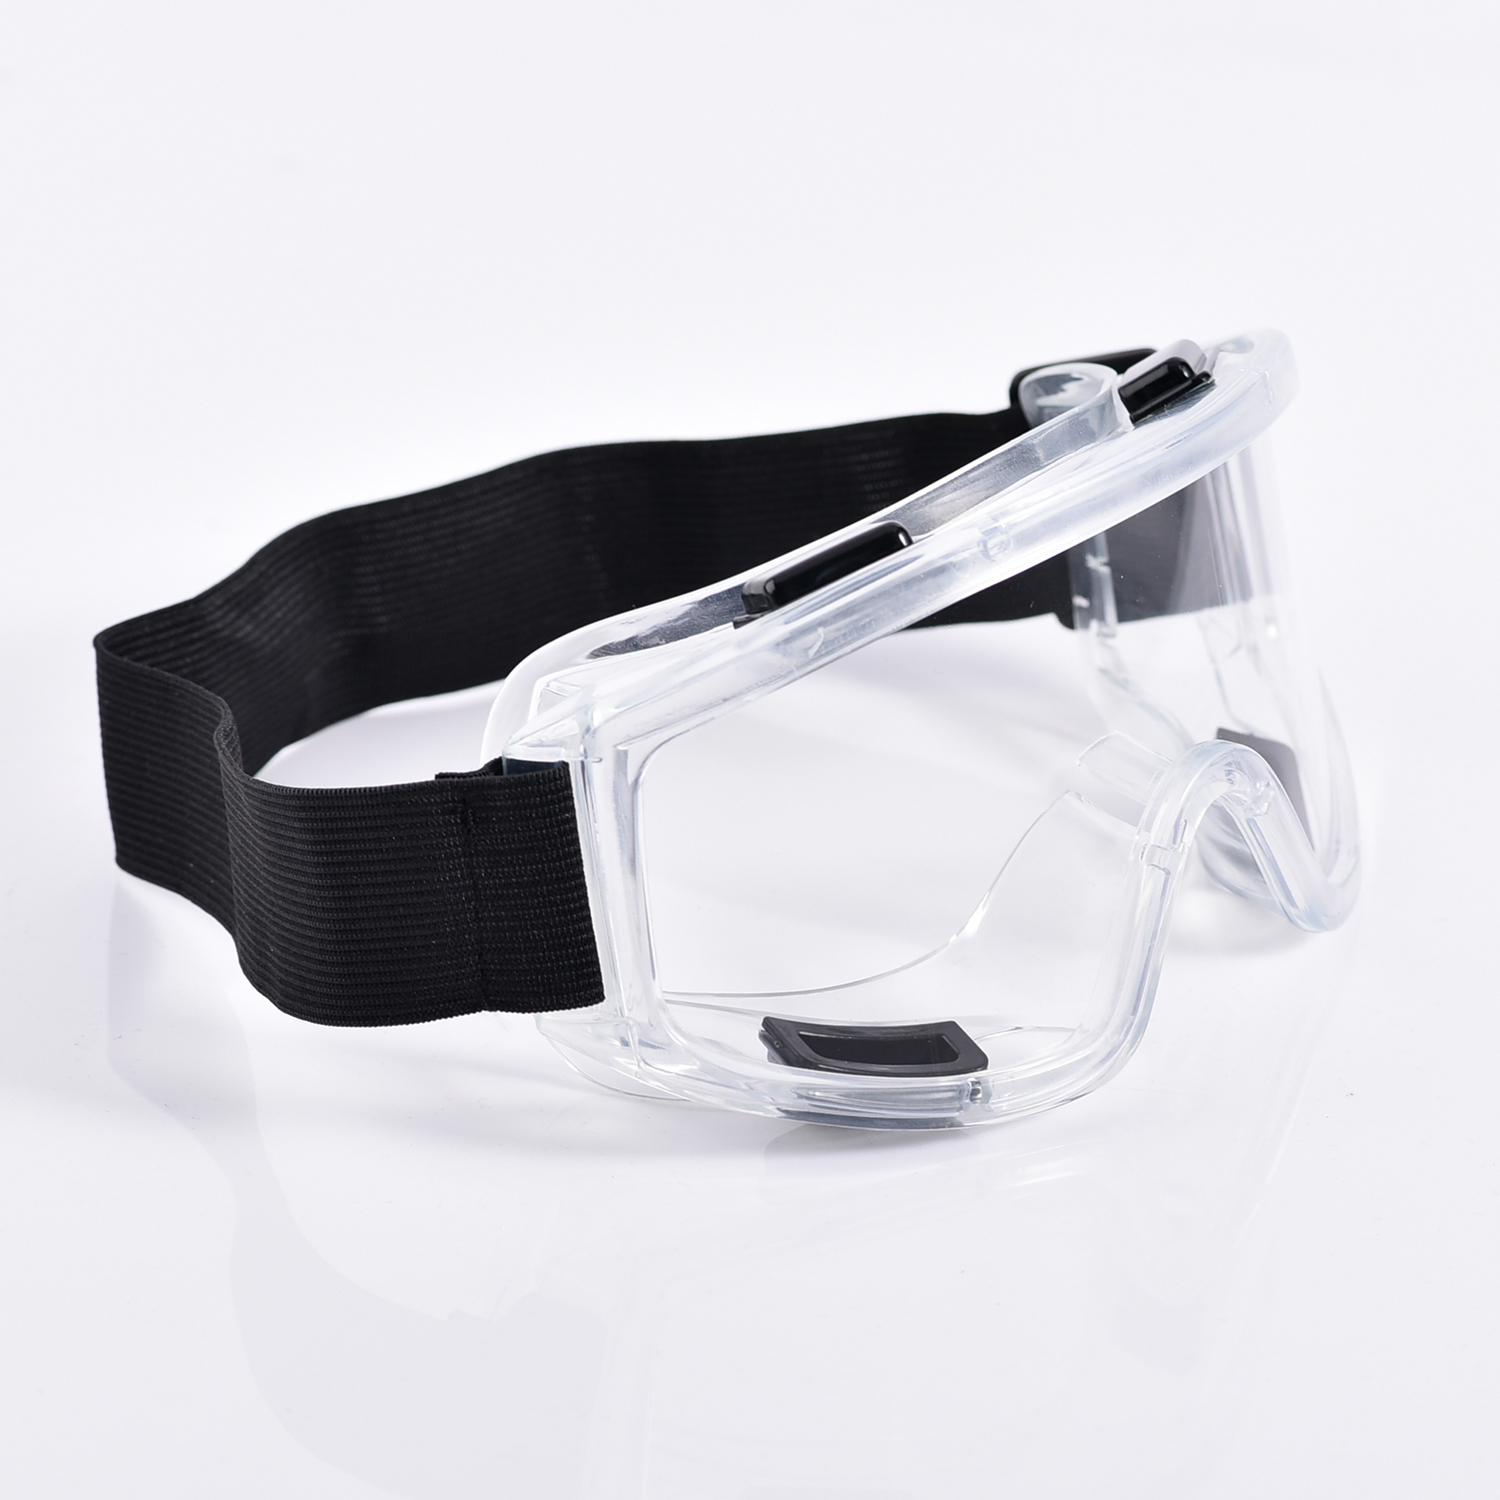 Gafas de seguridad transparentes con lentes de policarbonato KS503